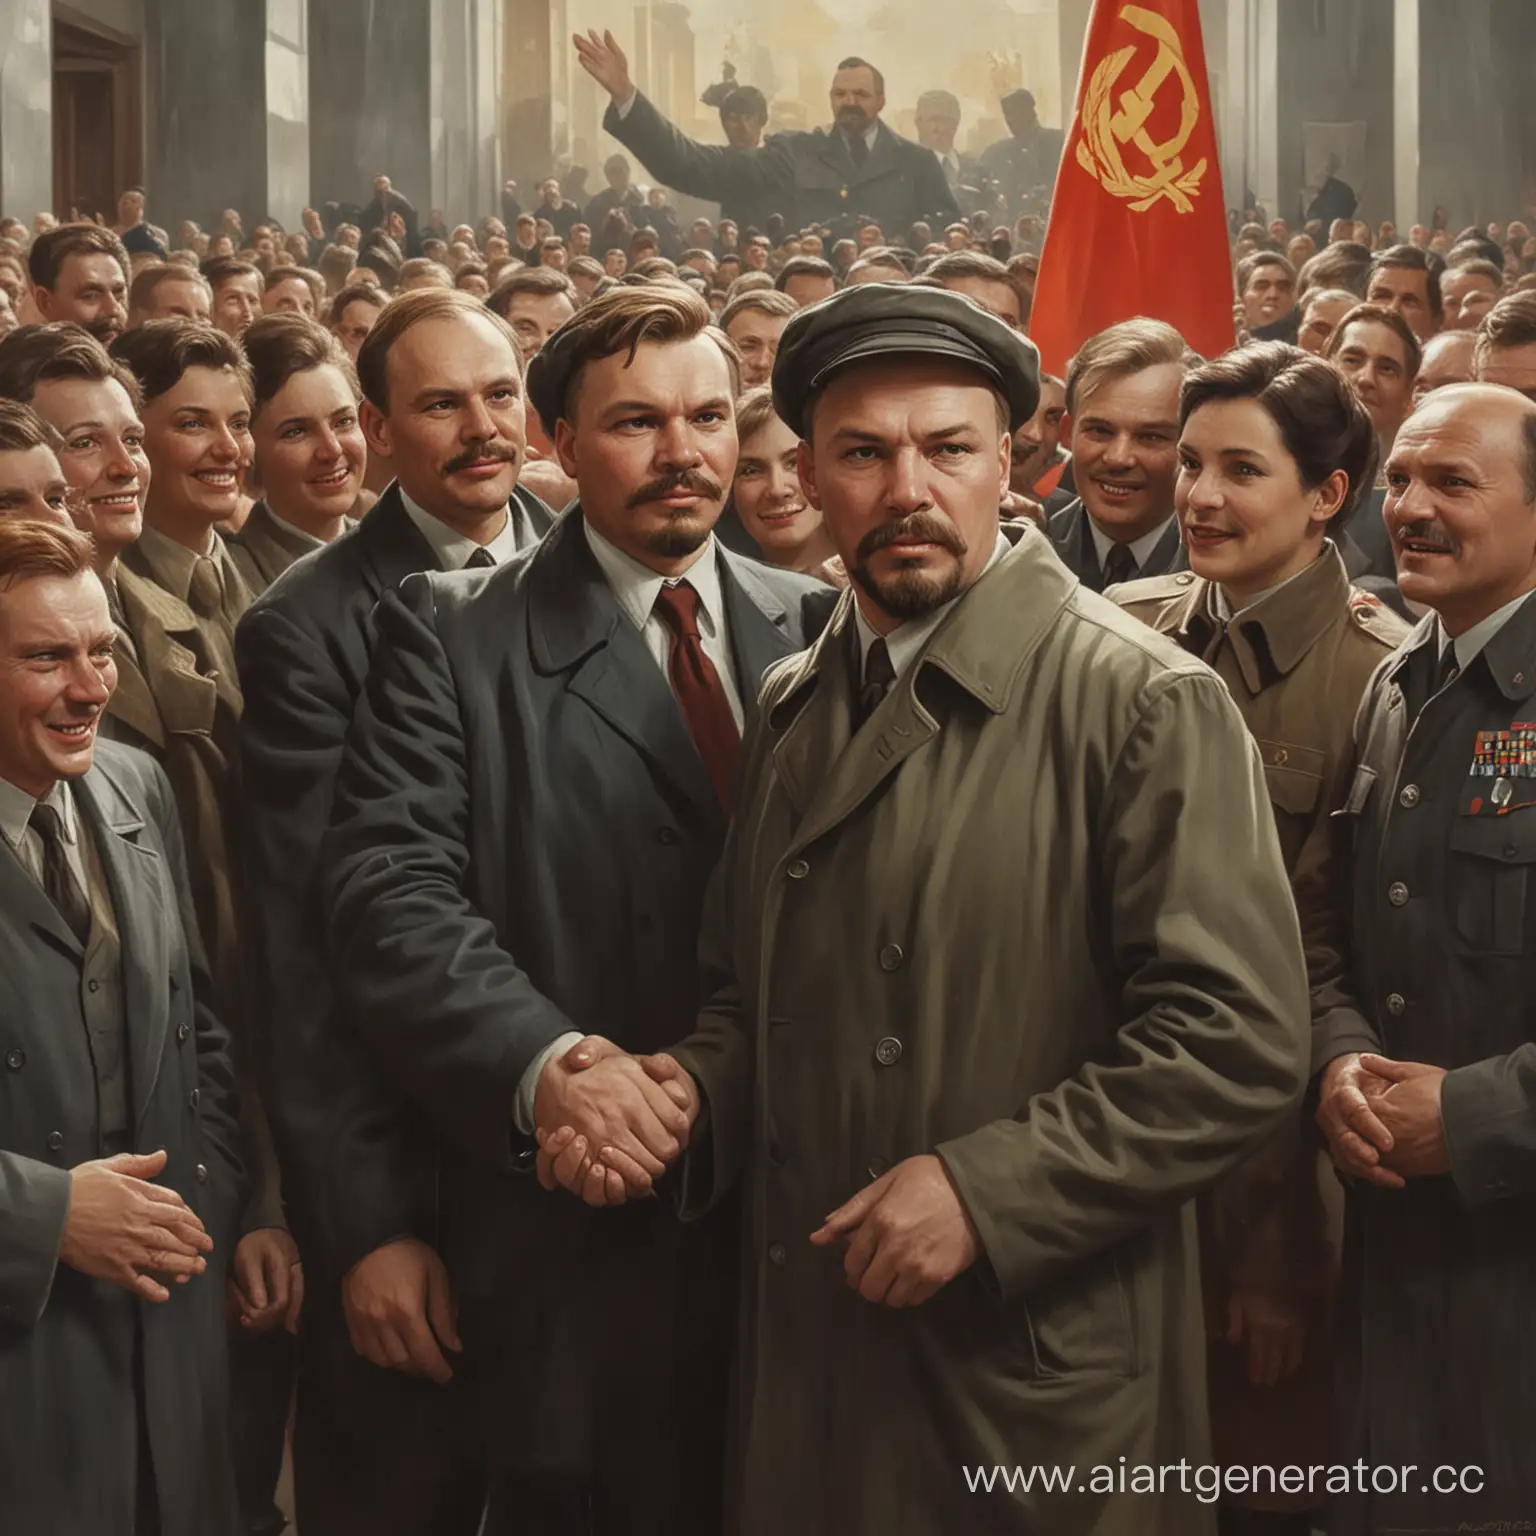 USSR-Design-Bureau-Celebration-Kuhlmans-Portrait-of-Lenin-and-Colleagues-Congratulations